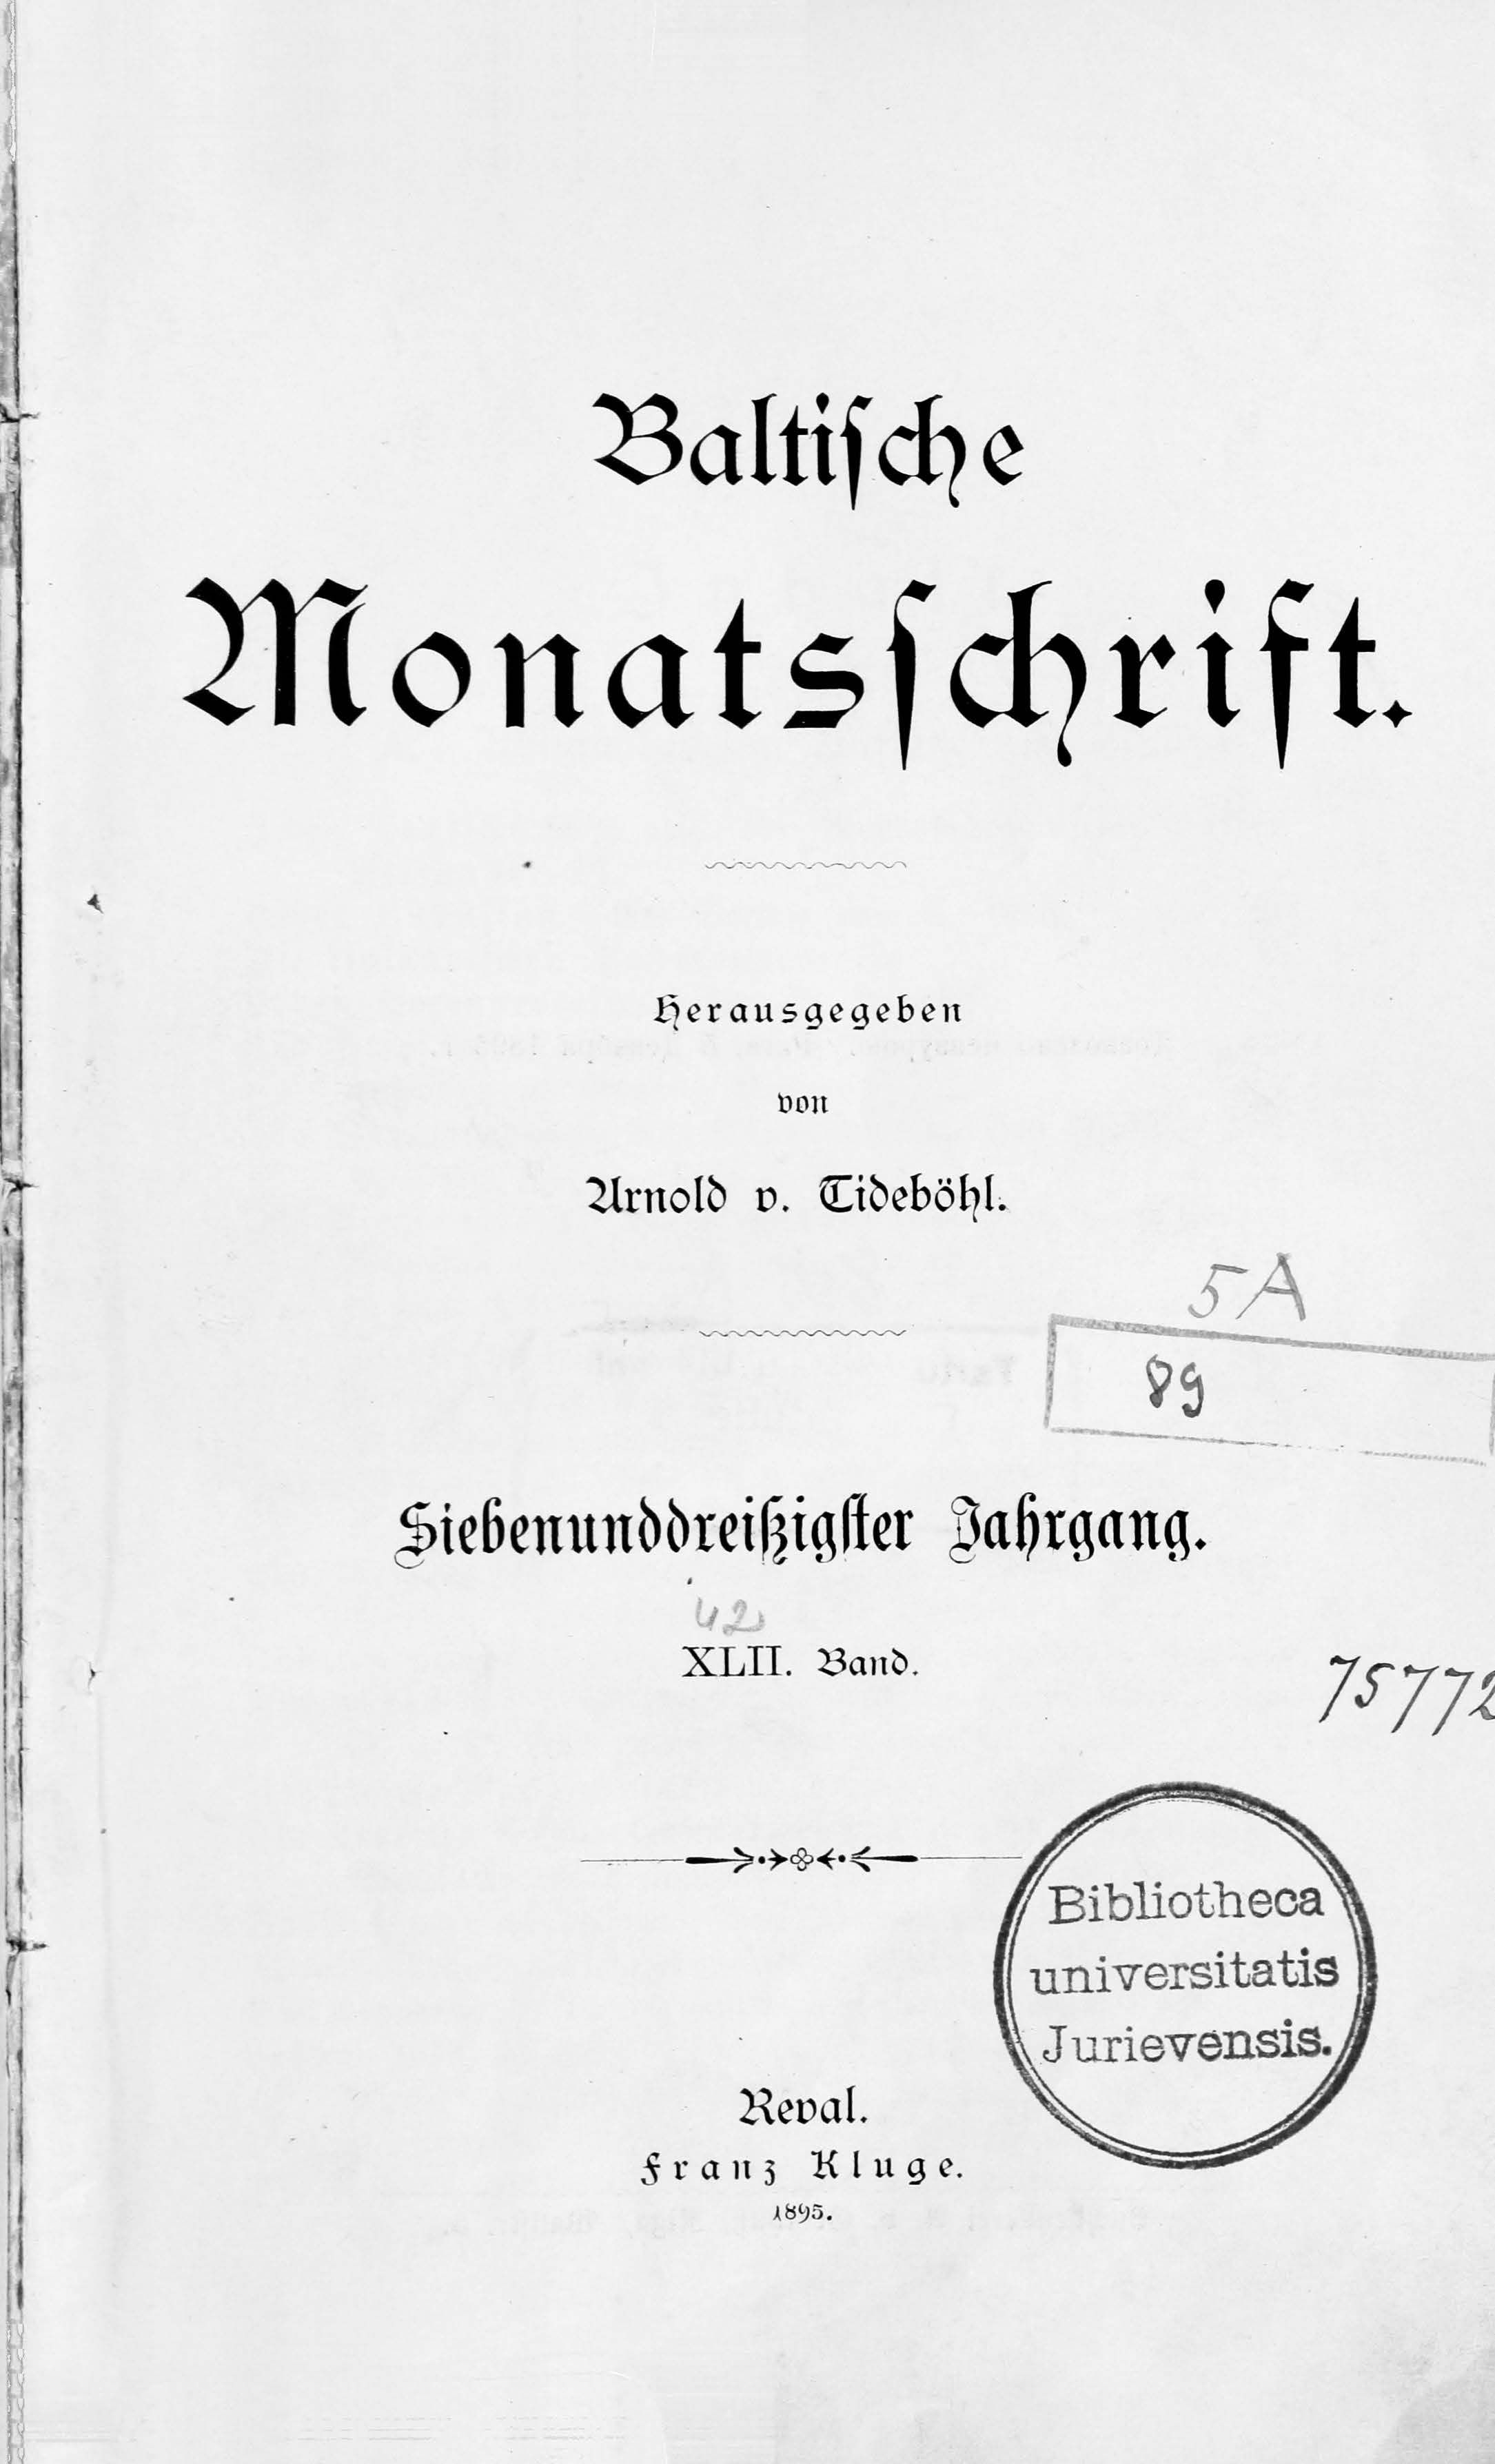 Baltische Monatsschrift [42] (1895) | 1. Titelblatt